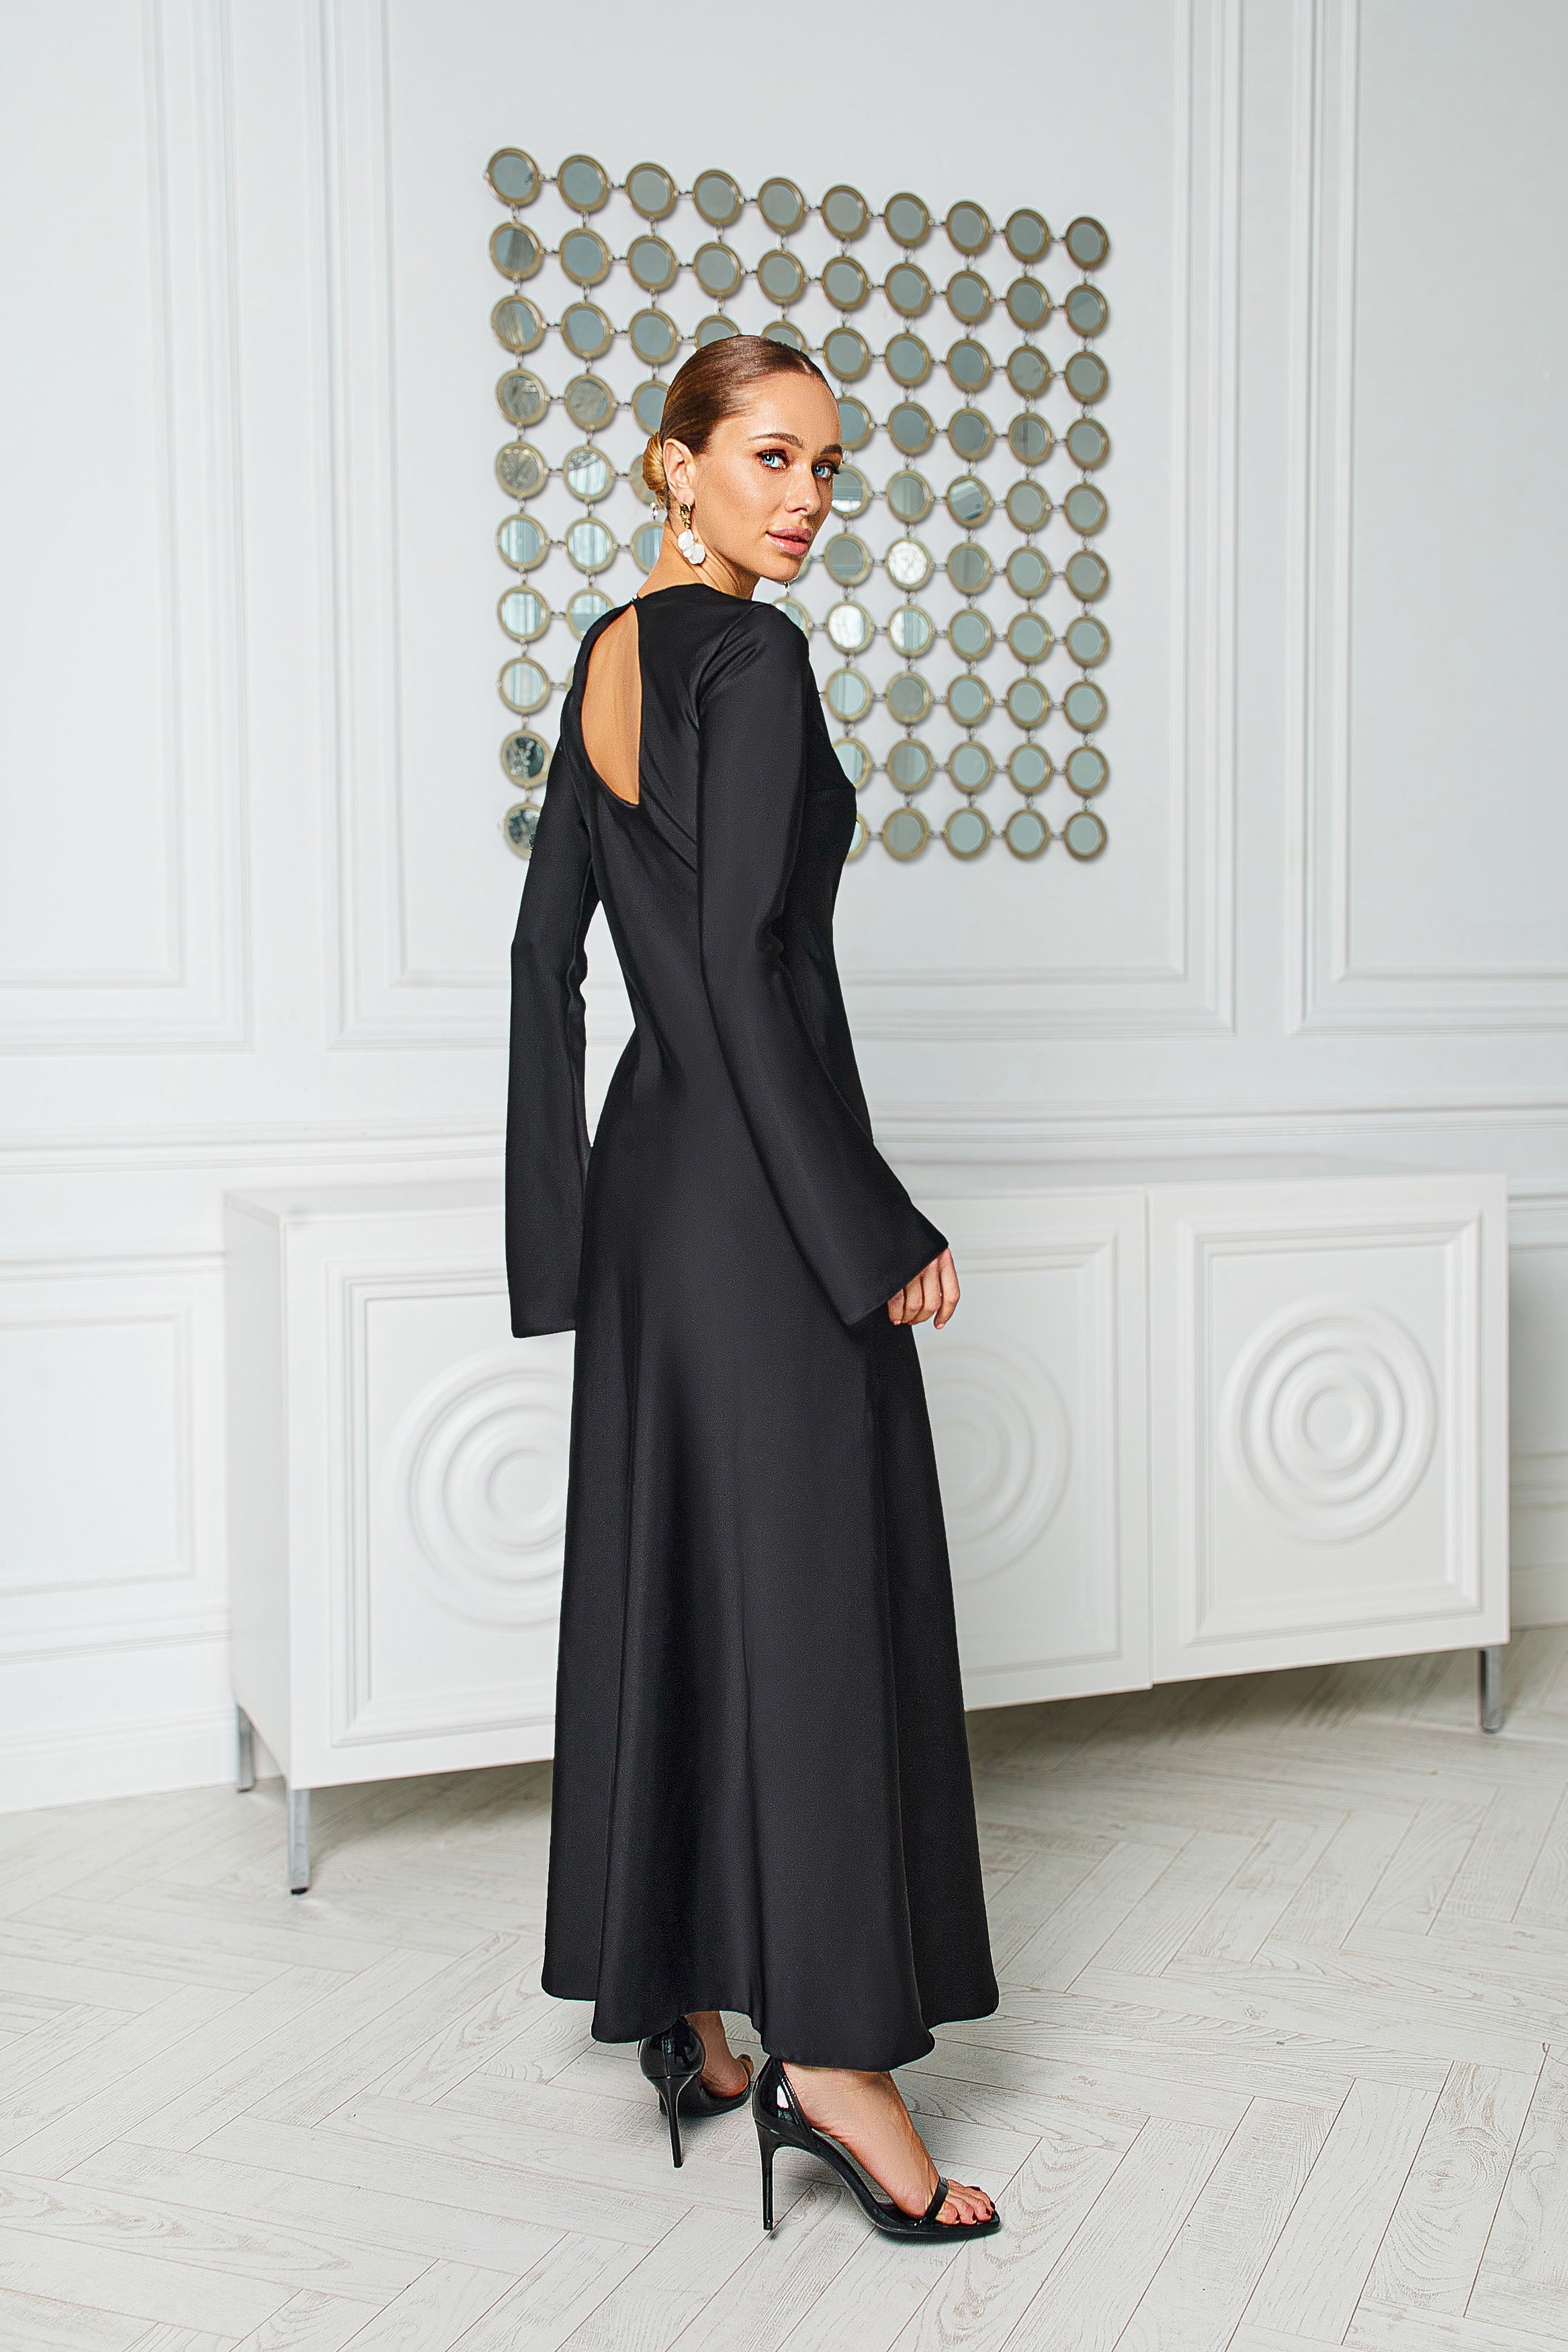 Alexa Black Satin Long Sleeve Maxi Dress